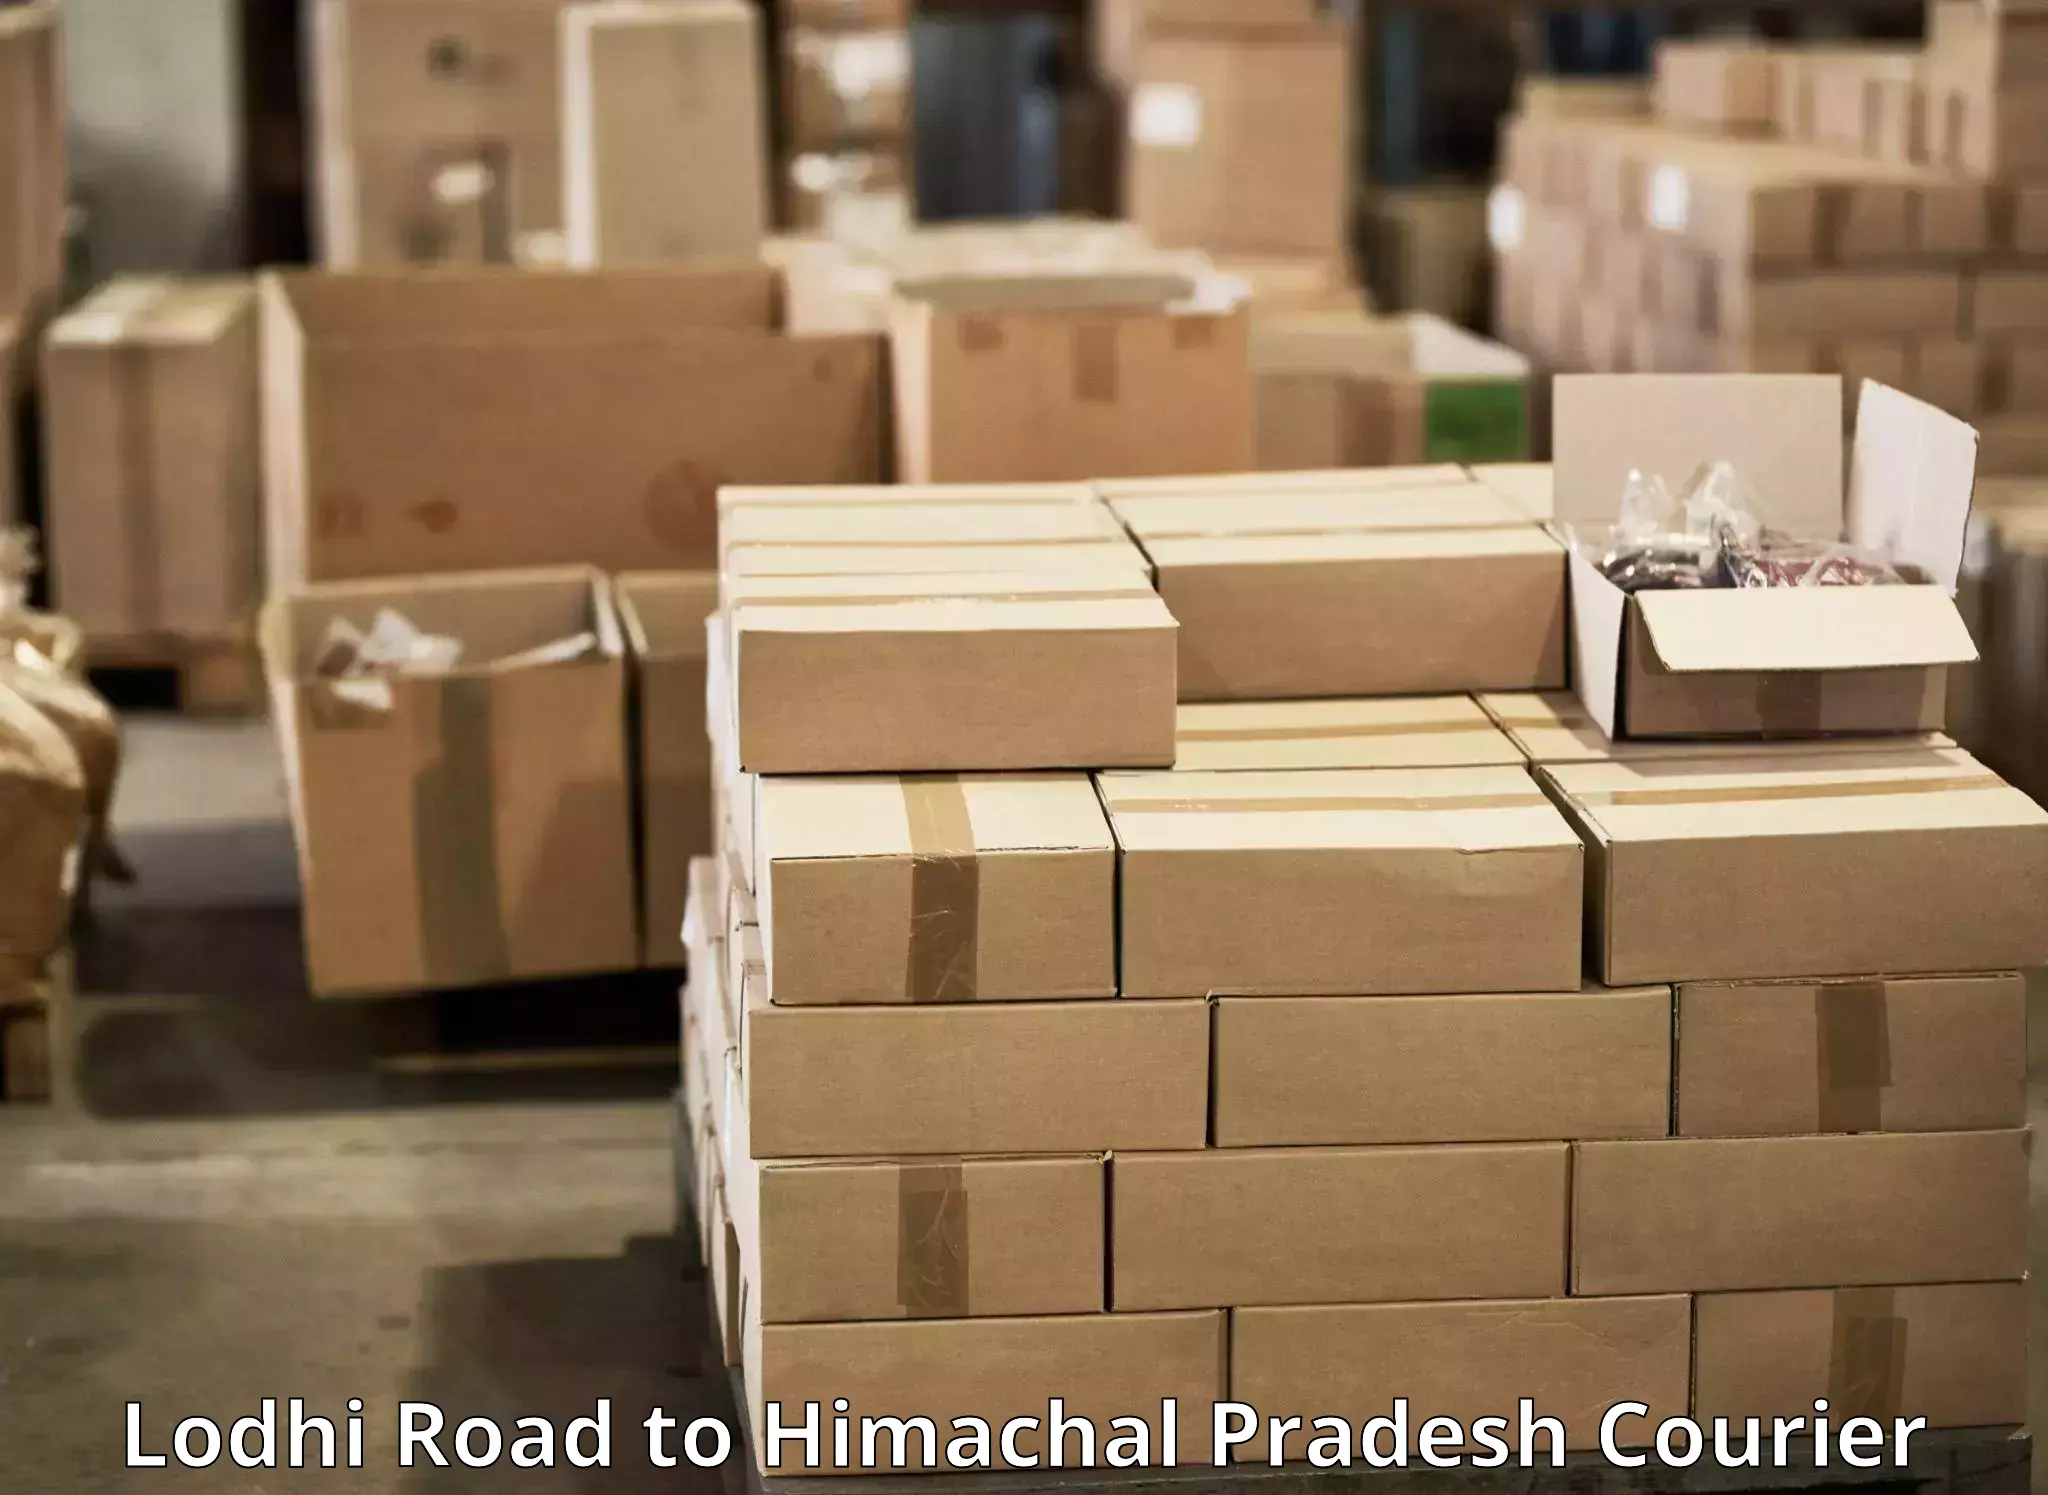 Efficient parcel delivery Lodhi Road to Una Himachal Pradesh